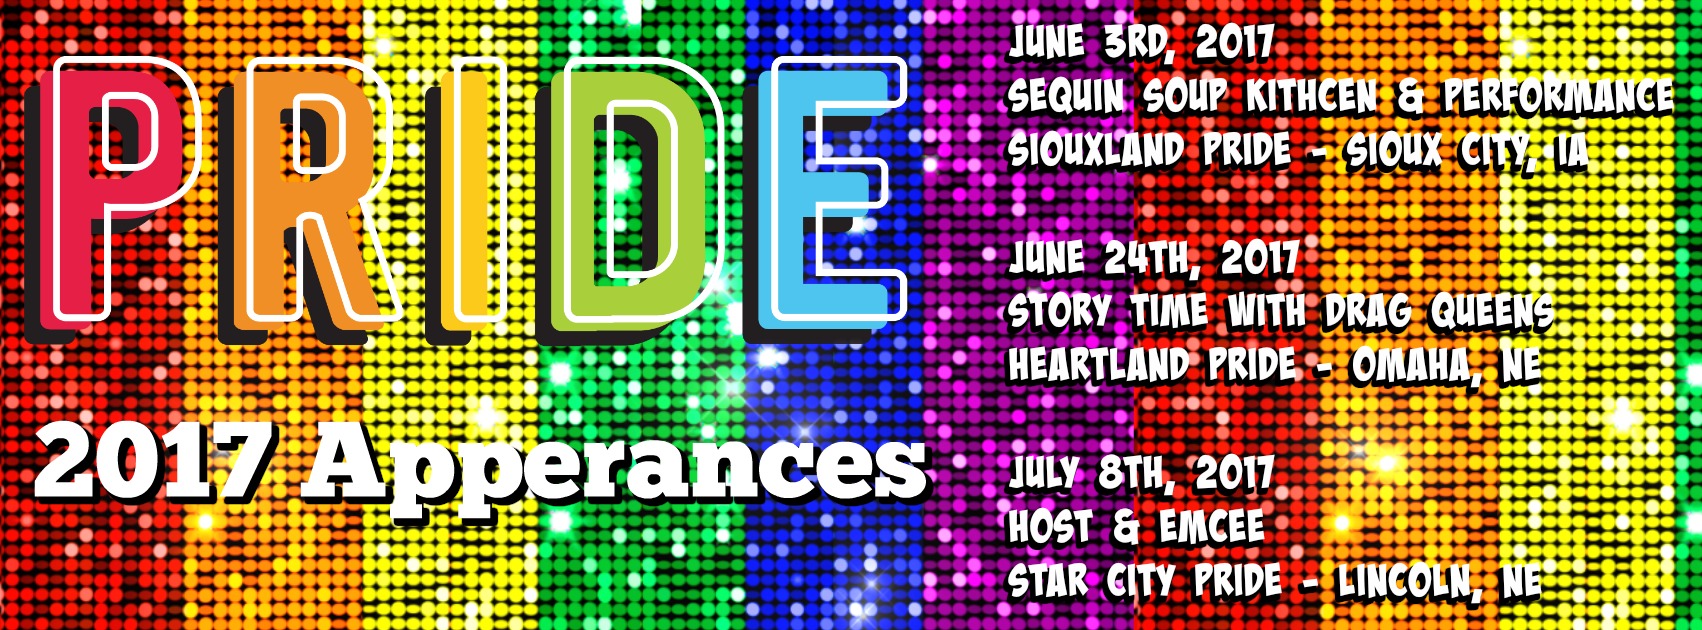 Pride Schedule.jpg